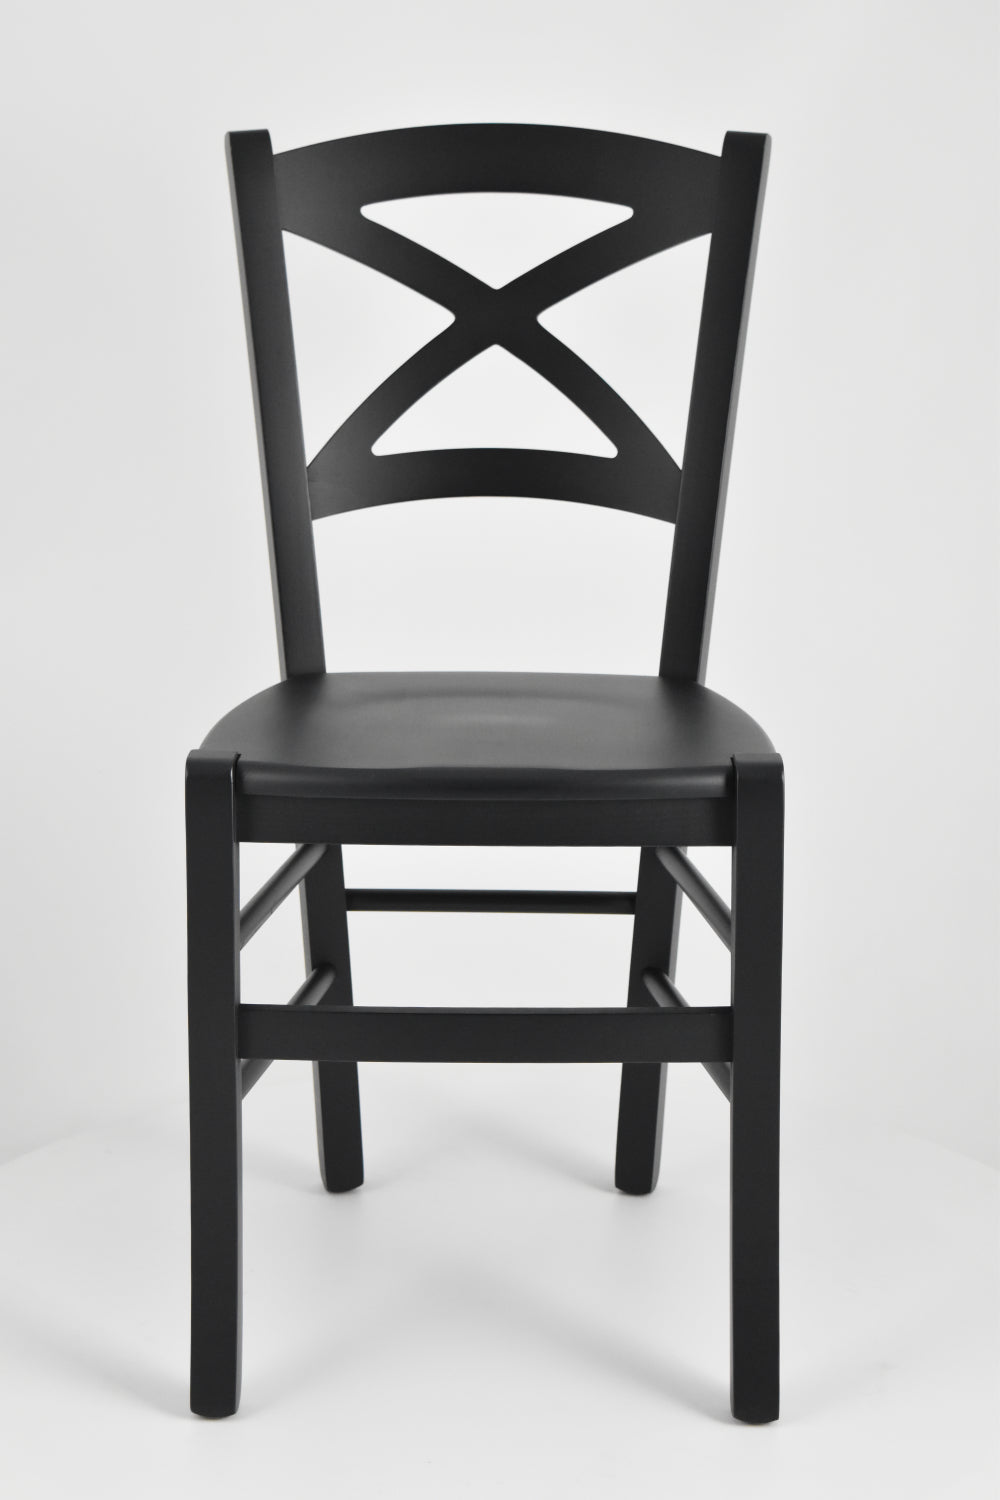 Tommychairs - Set 4 sillas de Cocina y Comedor Cross, Estructura en Madera de Haya Color anilina Negra y Asiento de Madera